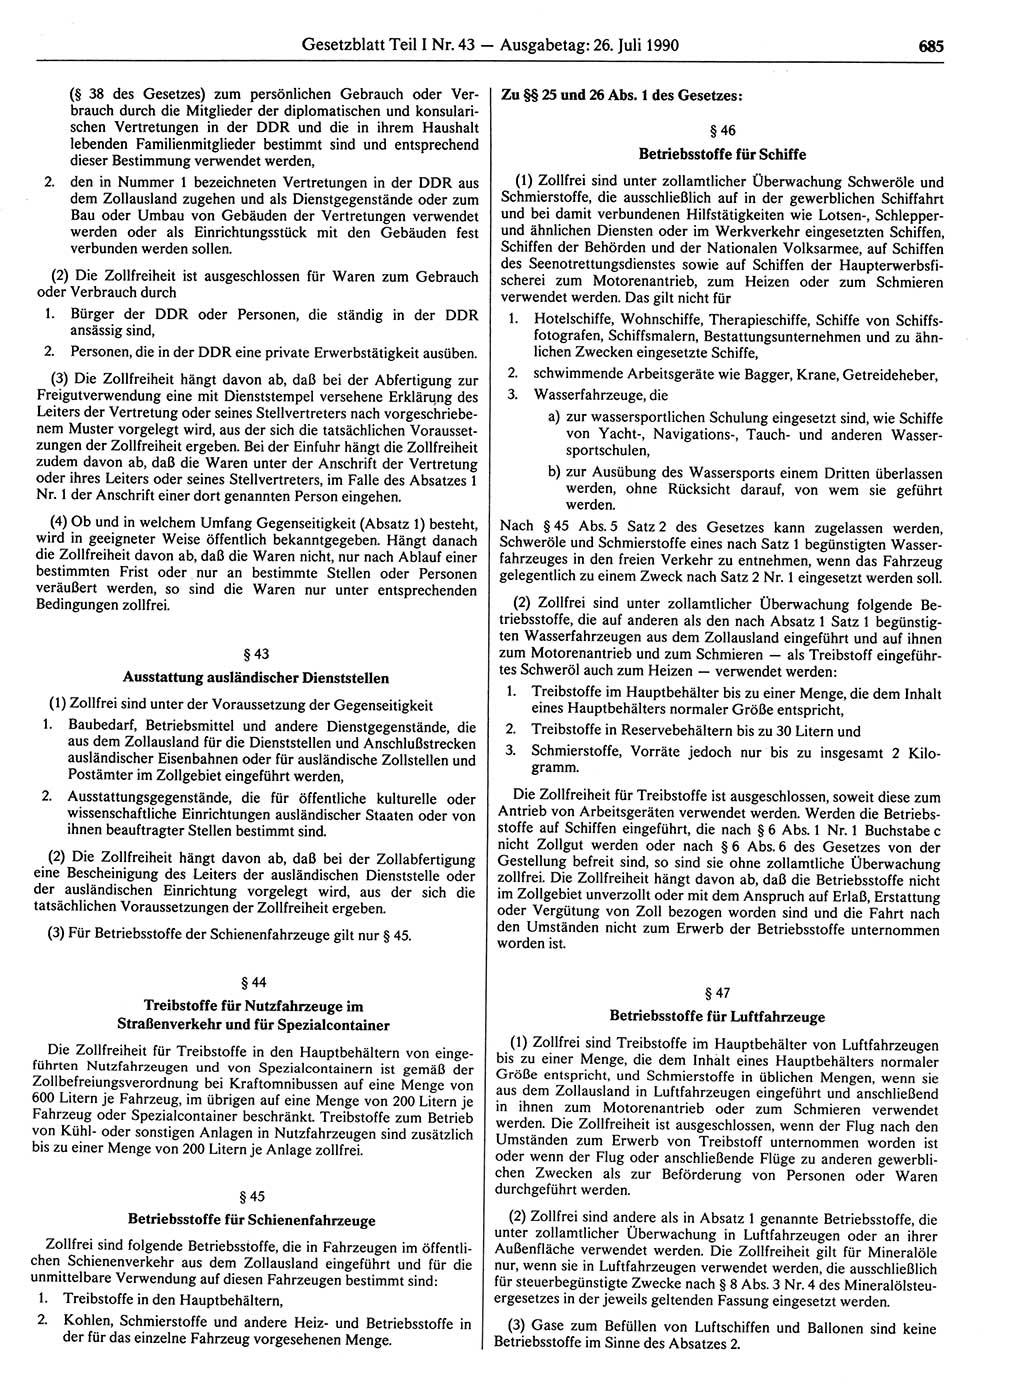 Gesetzblatt (GBl.) der Deutschen Demokratischen Republik (DDR) Teil Ⅰ 1990, Seite 685 (GBl. DDR Ⅰ 1990, S. 685)